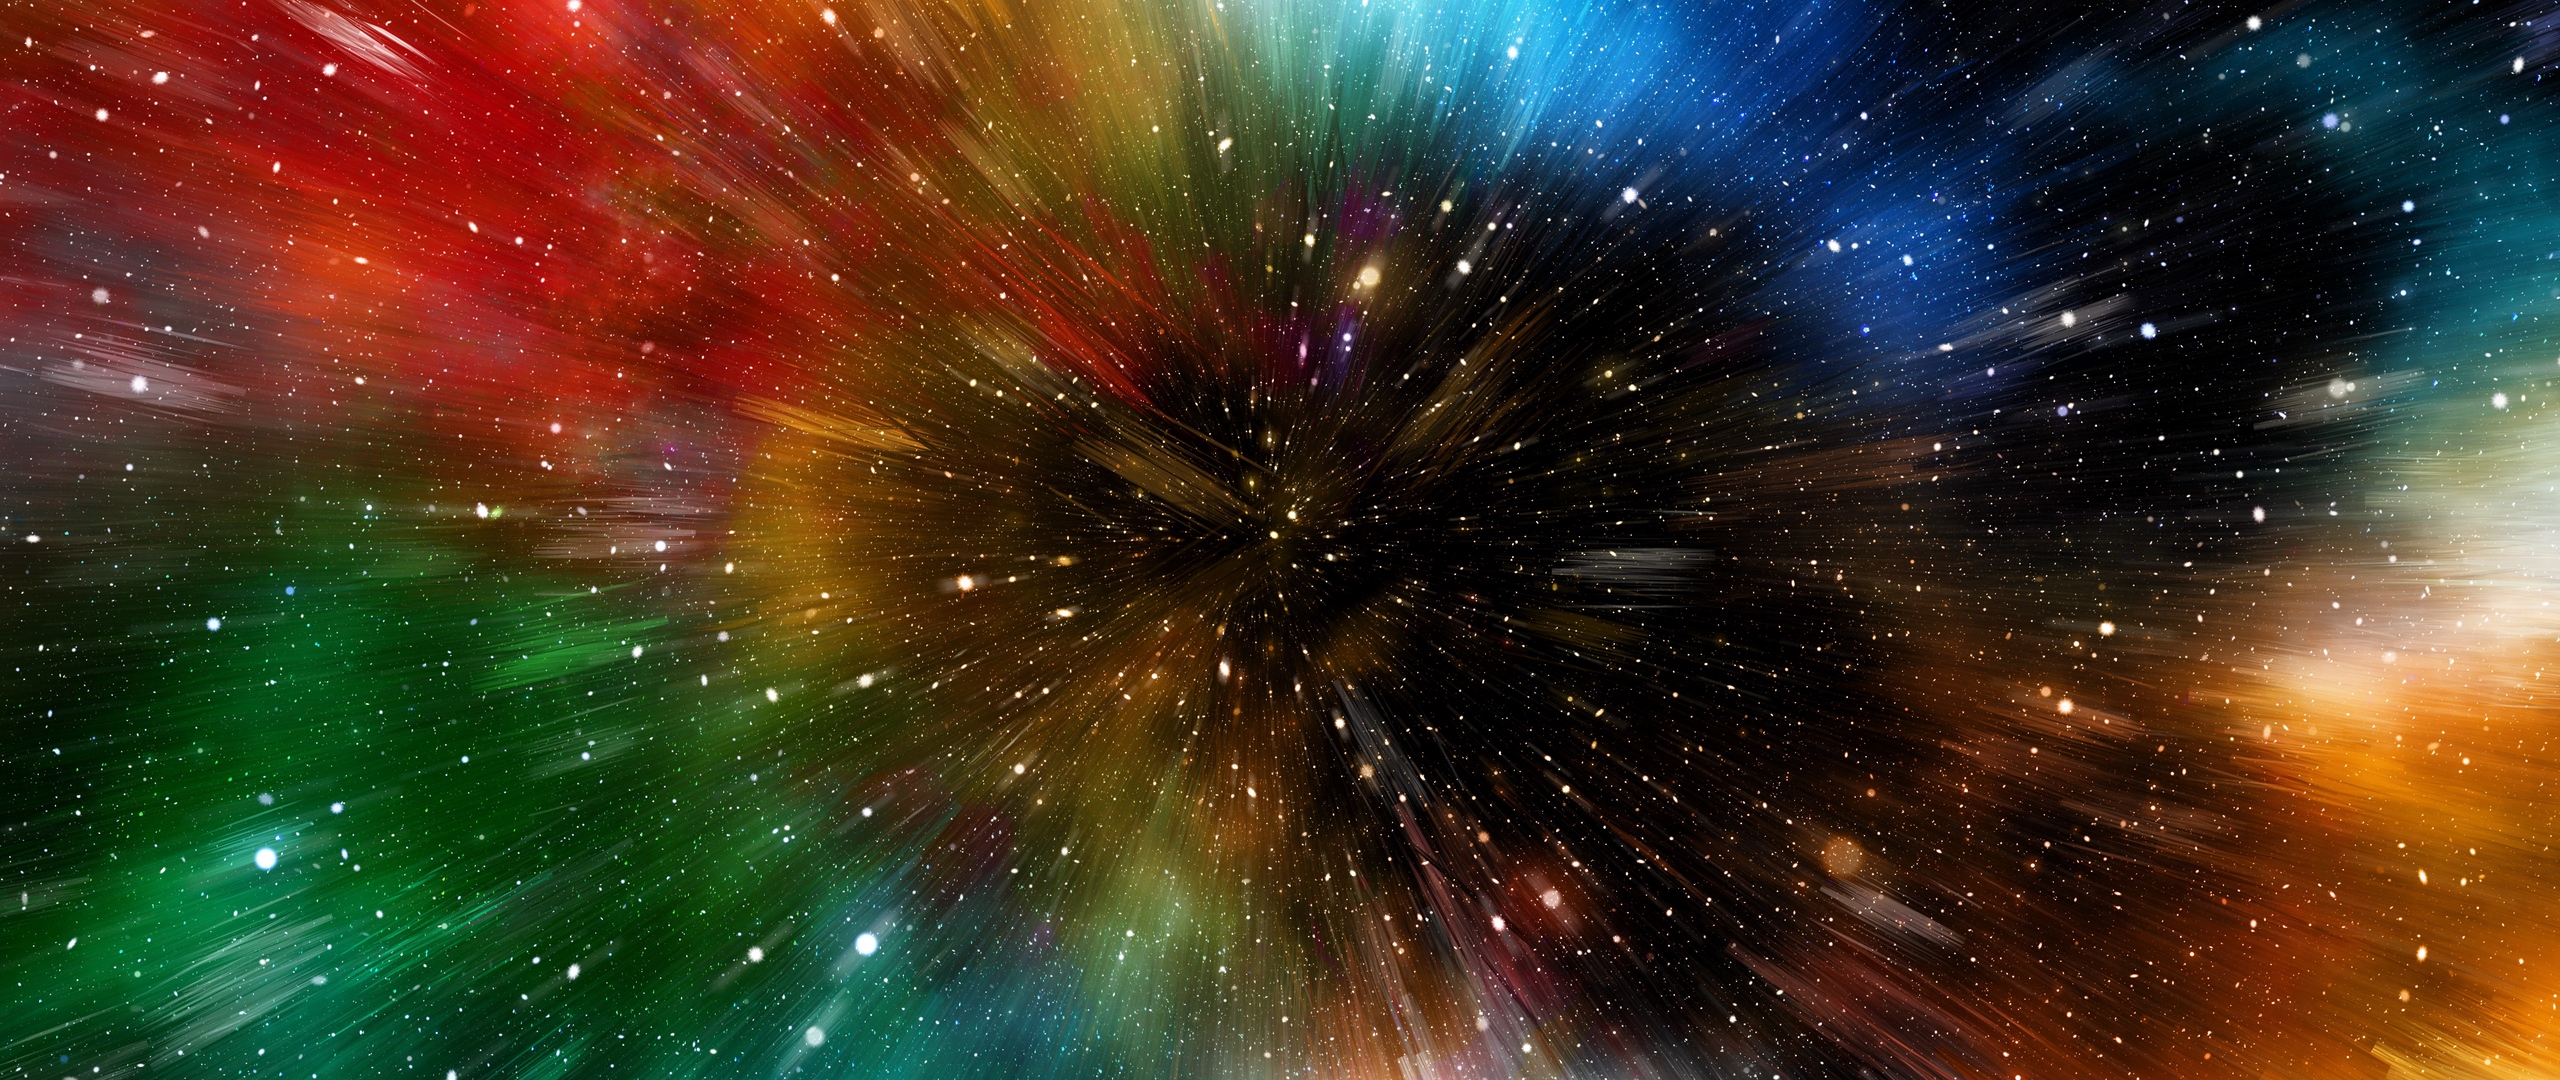 galaxy note 3 fond d'écran hd 1080p,la nature,ciel,objet astronomique,espace,univers